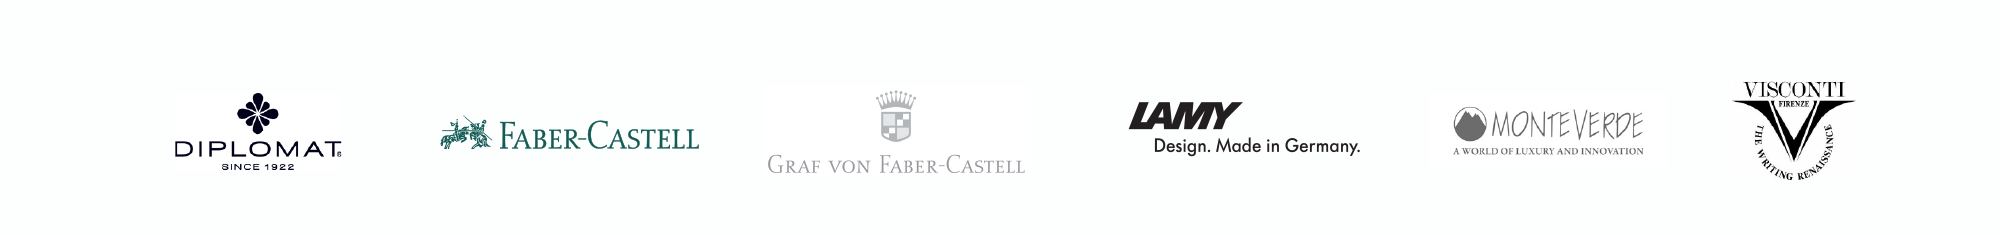 Diplomat Faber-Castell Lamy Monteverde Visconti